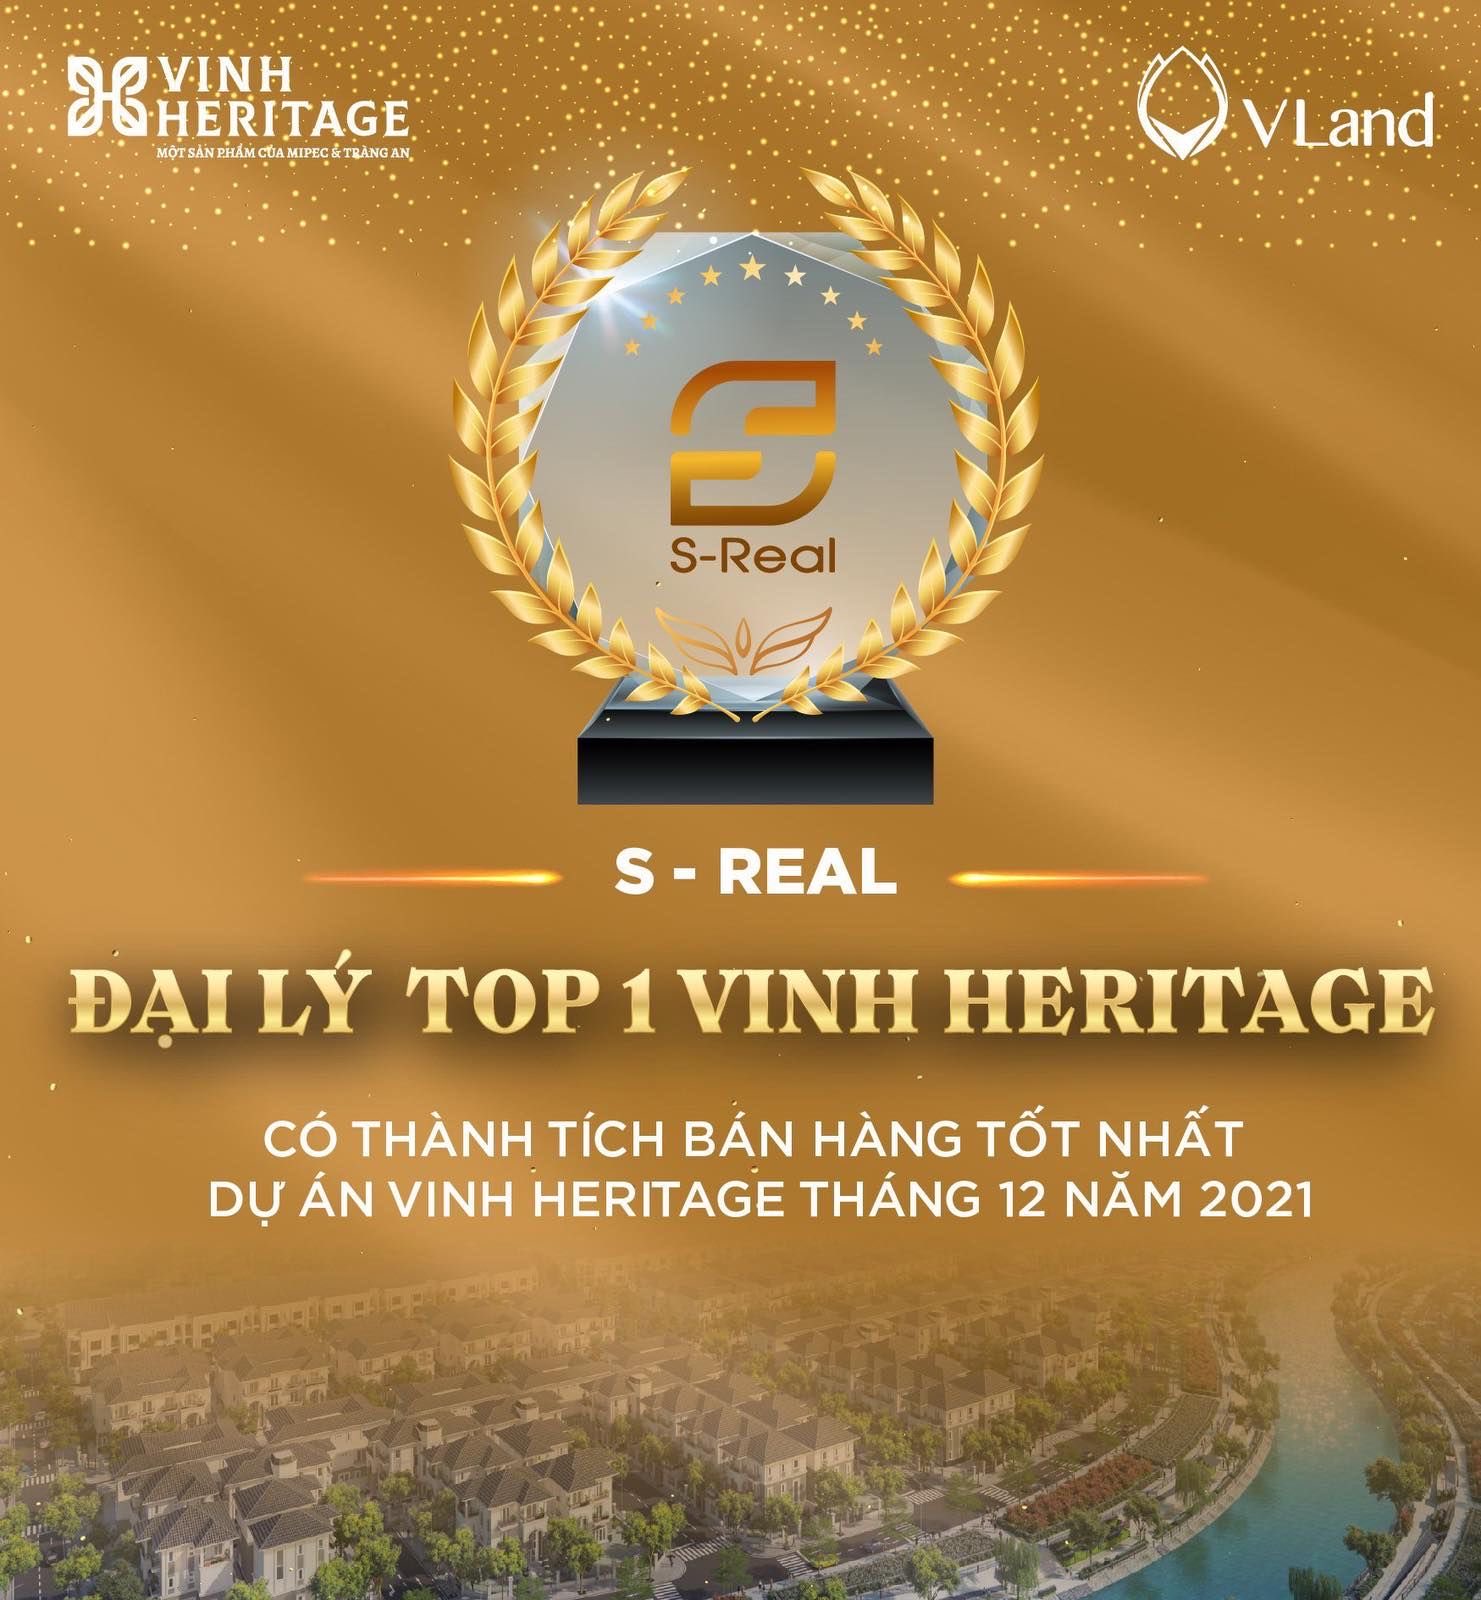 S-Real Việt Nam - Đơn vị phân phối xuất sắc nhất dự án Vinh Heritage năm 2021